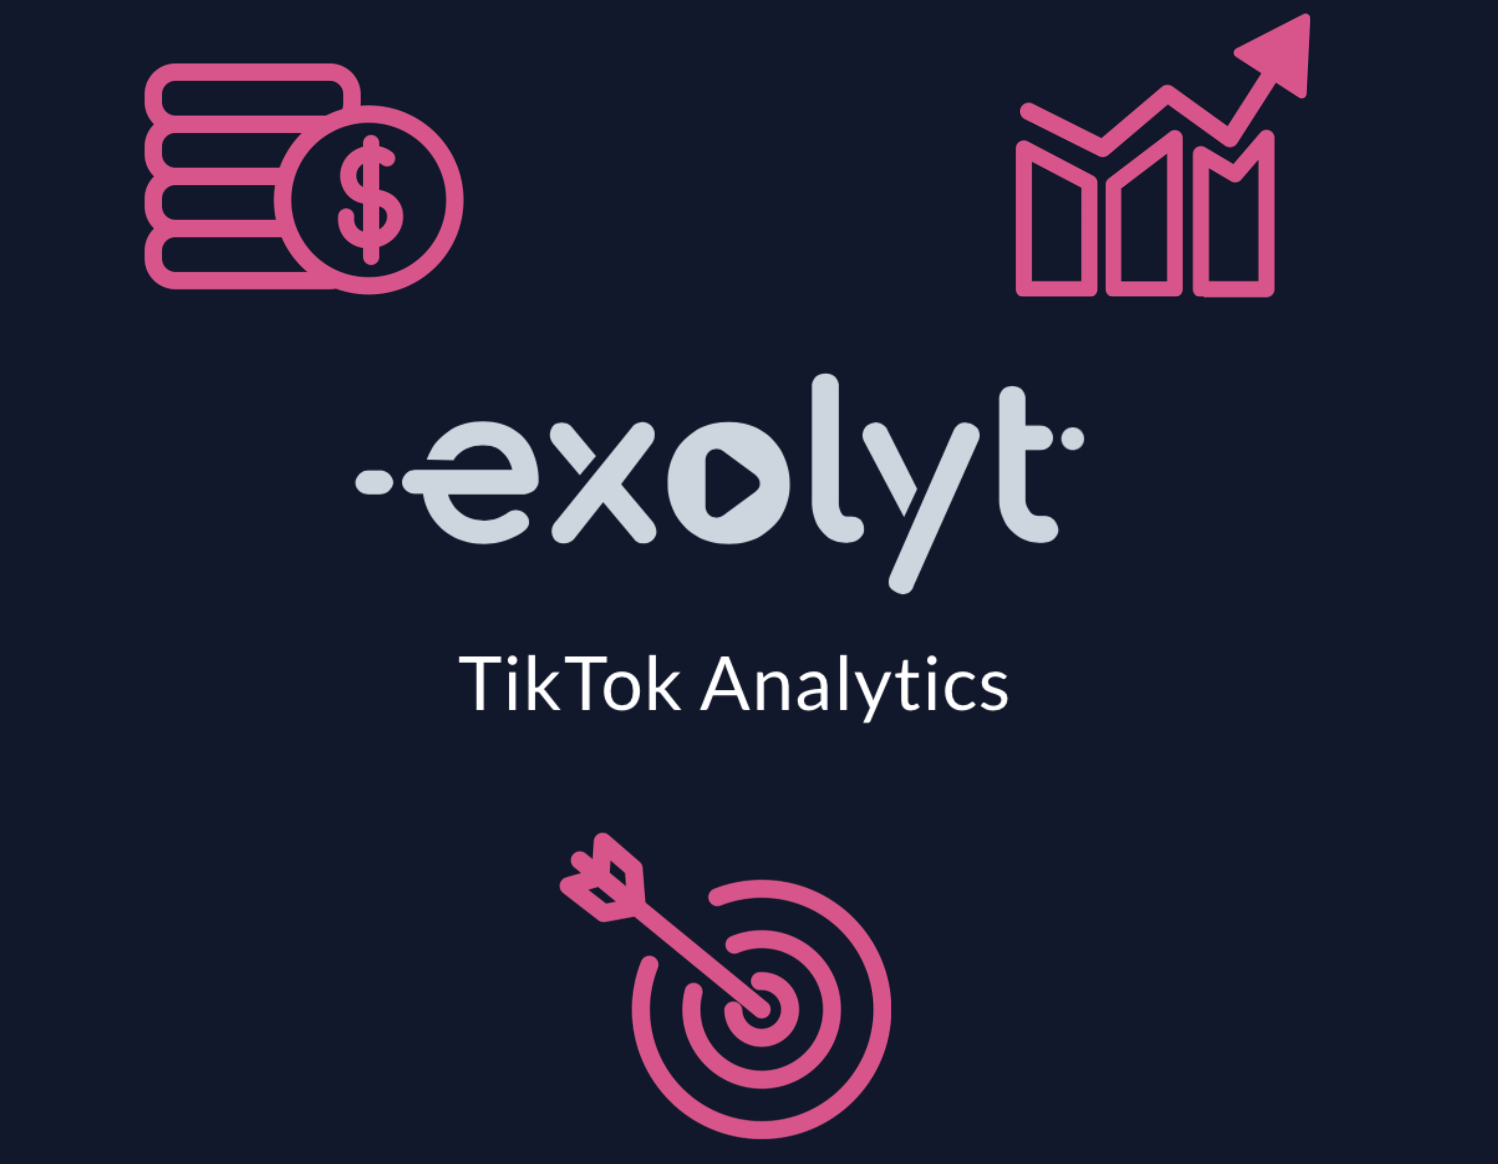 メディアエージェンシーがTikTok分析にExolytを使用する理由